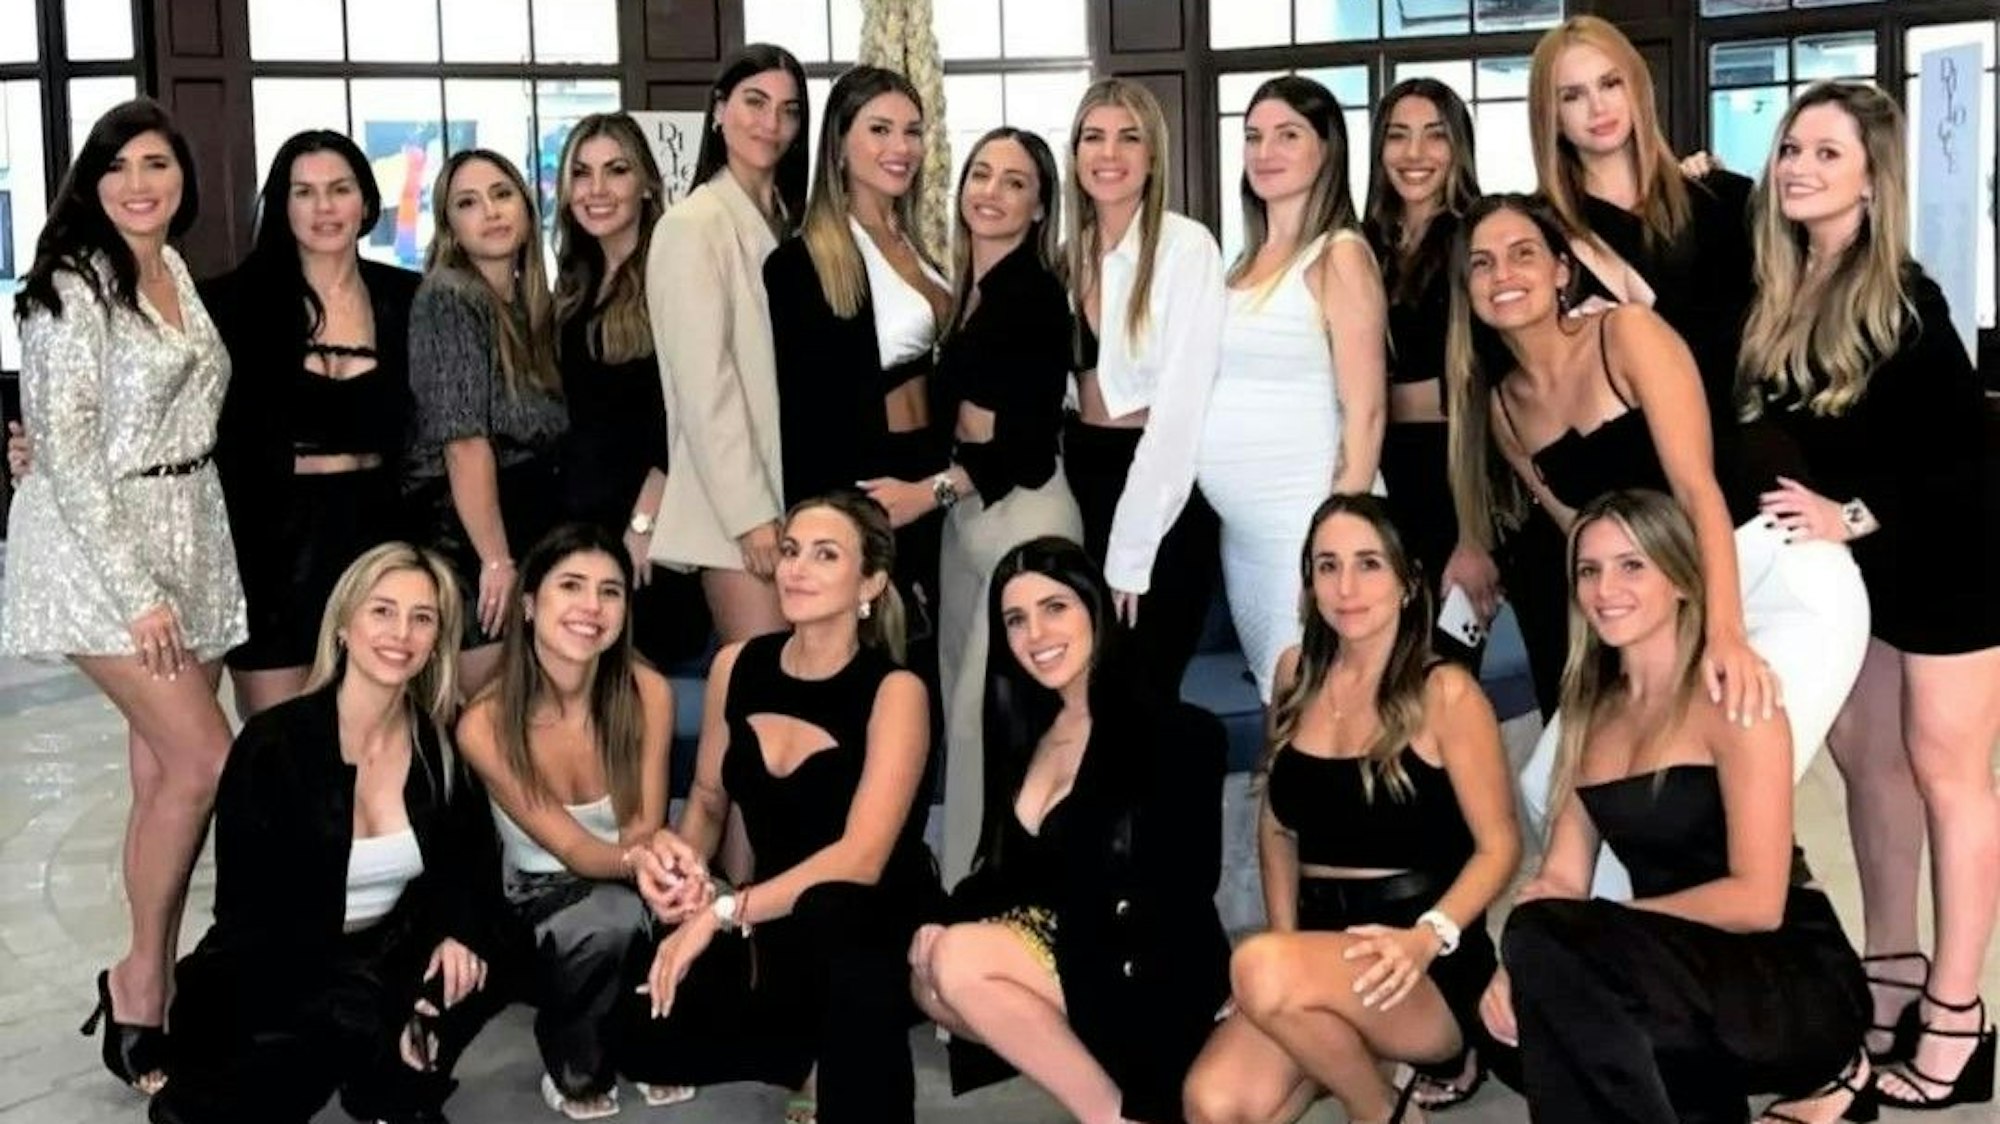 19 Spielerfrauen der argentinischen Nationalmannschaft posieren auf einem Gruppenfoto am Tag vor dem Halbfinale bei der WM 2022 in Katar.